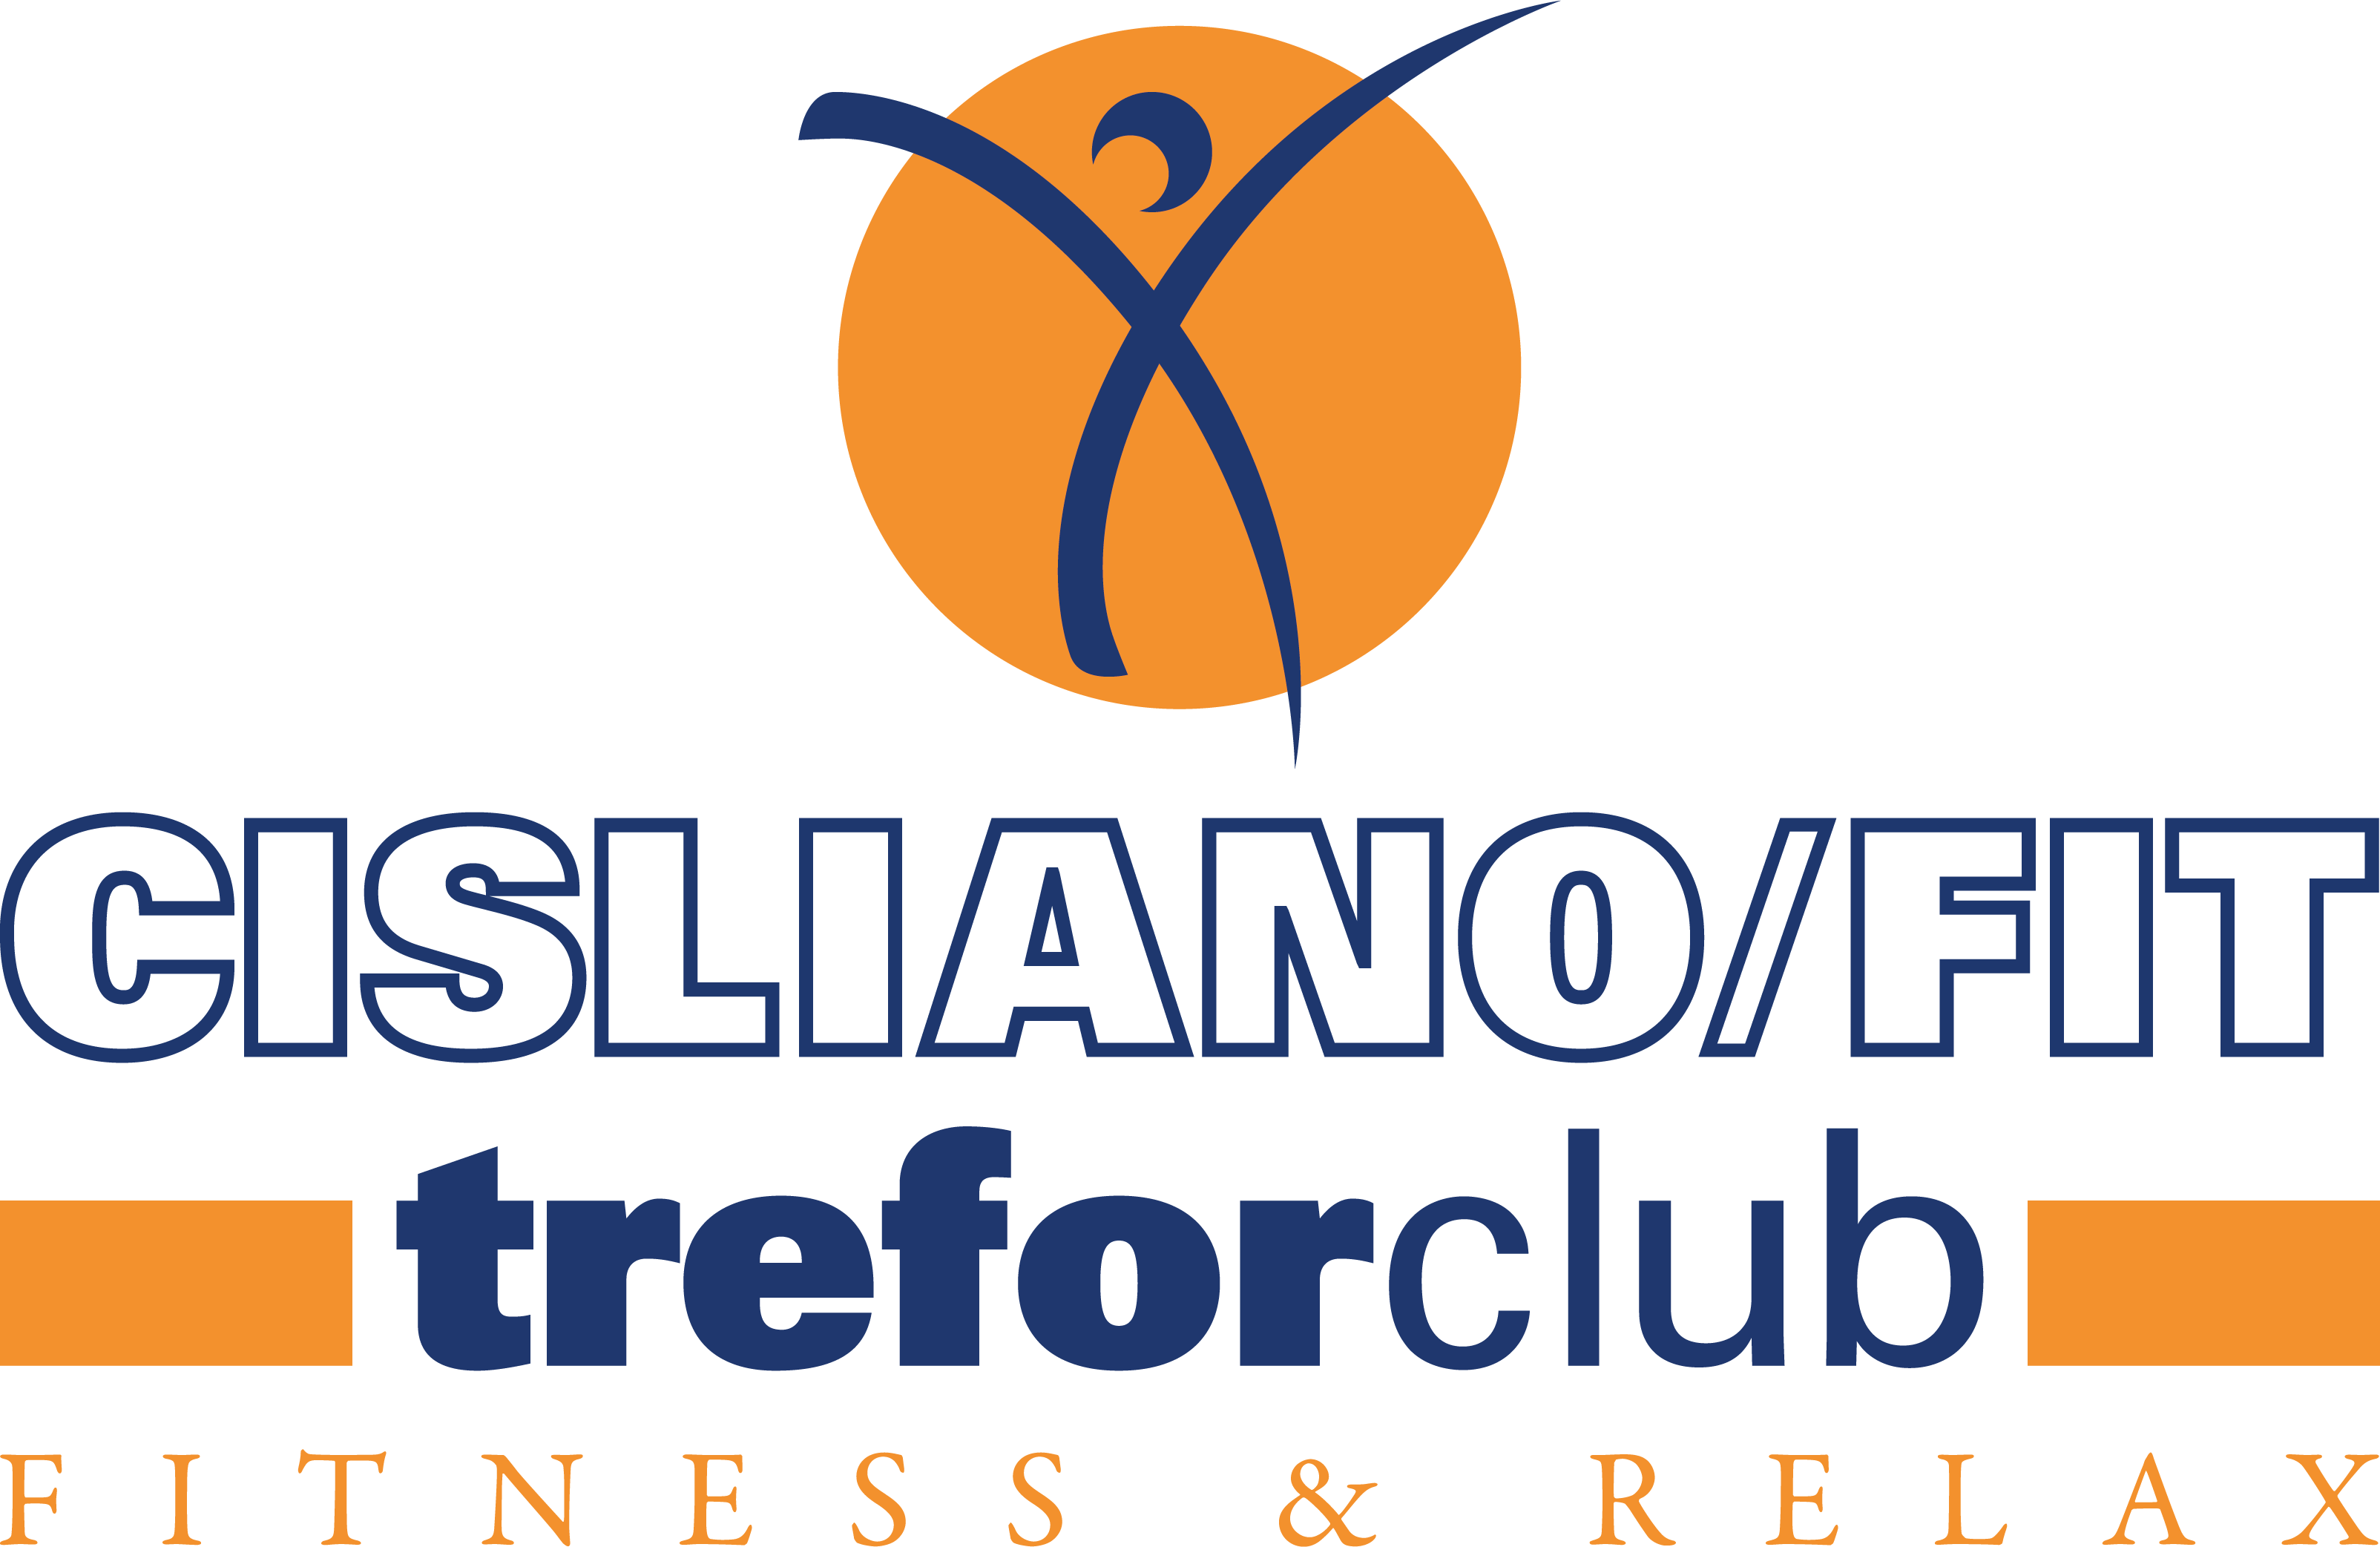 Cisliano fitness 3forclub